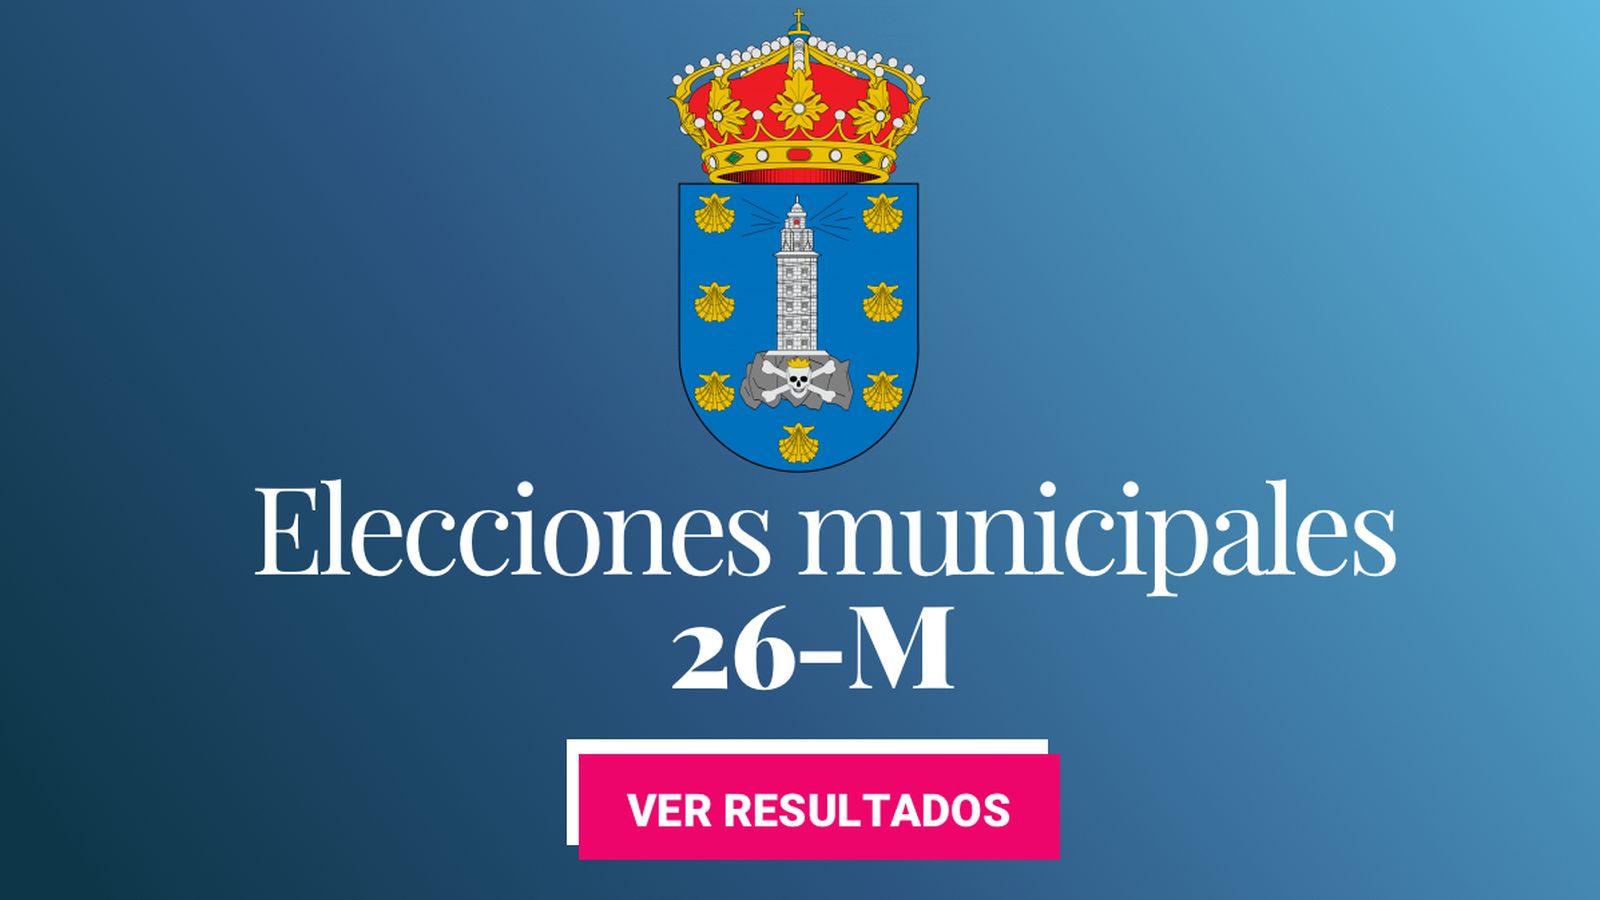 Foto: Elecciones municipales 2019 en A Coruña. (C.C./EC)